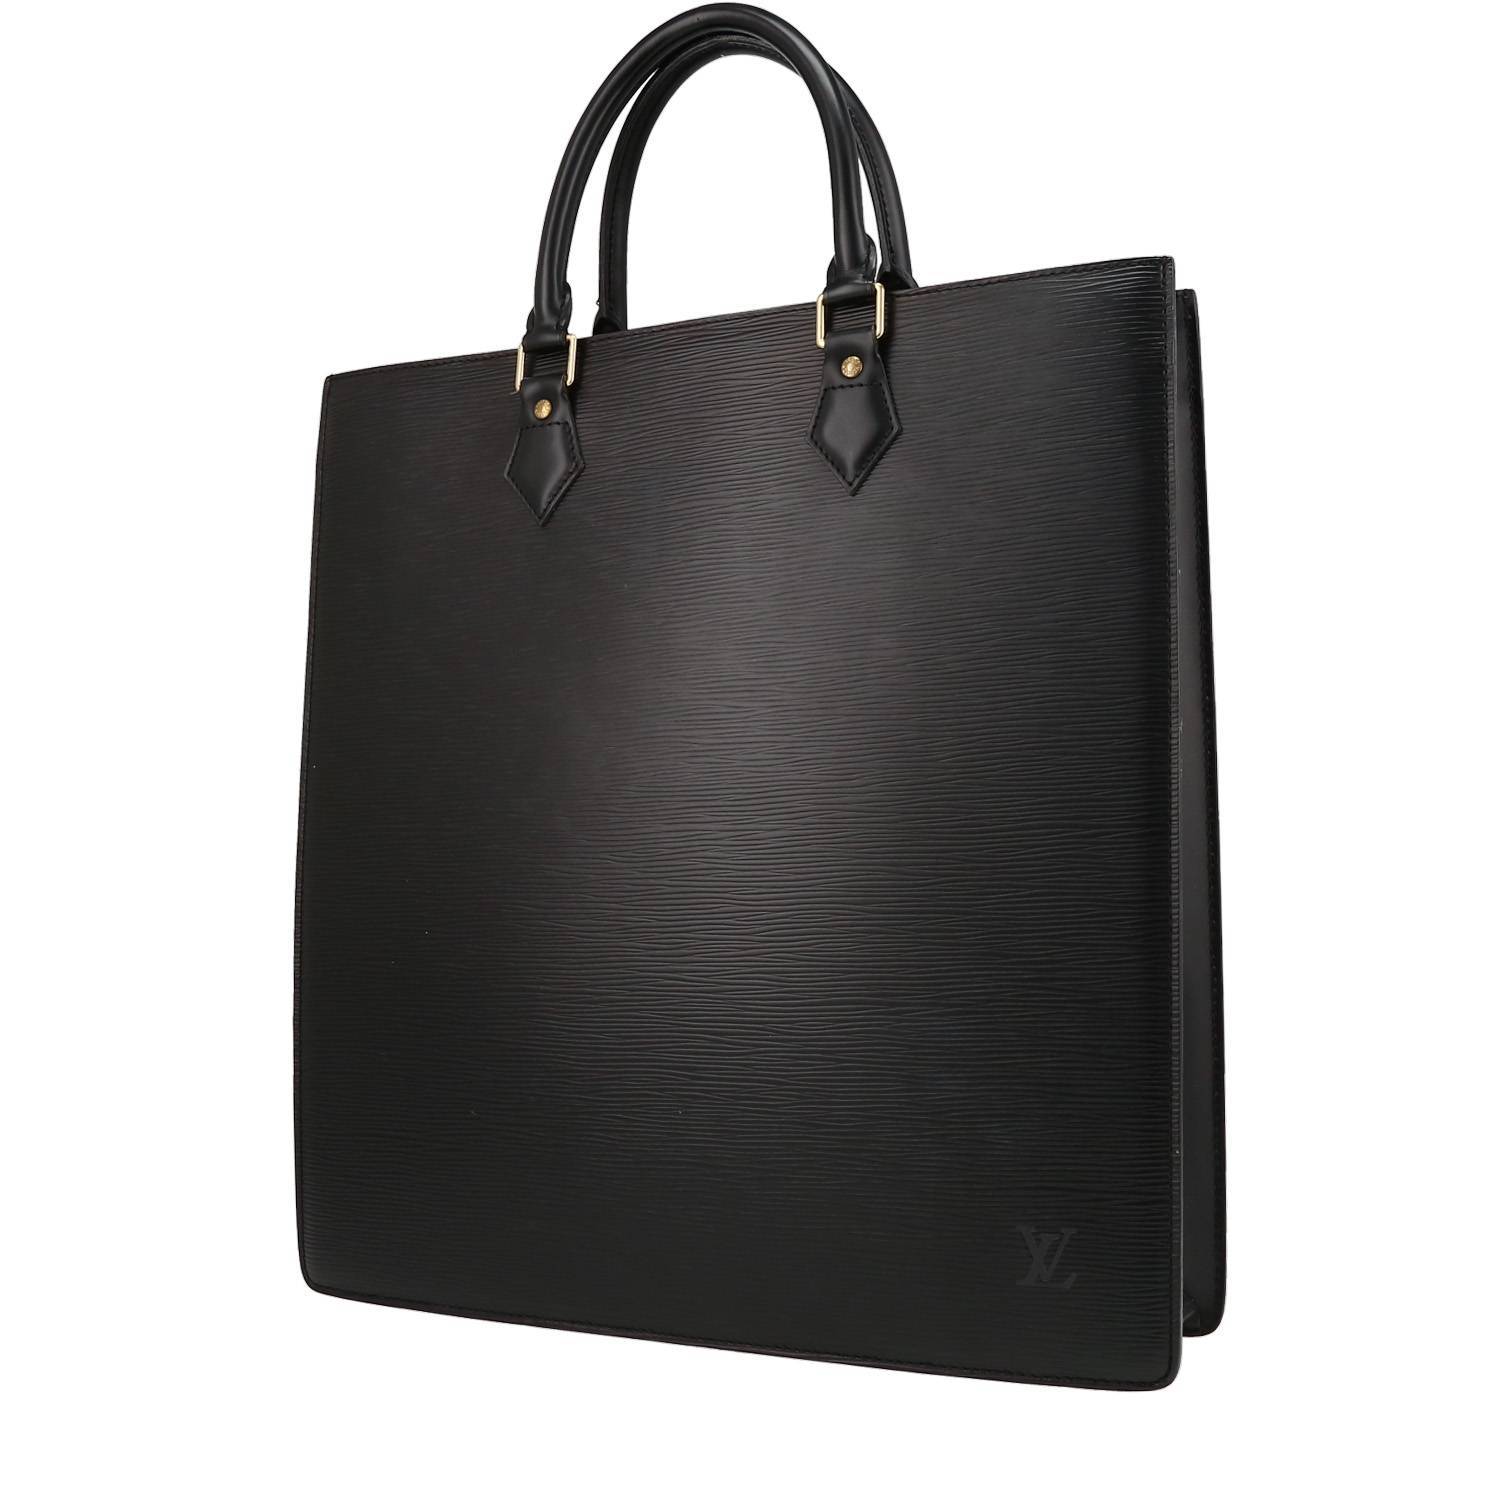 Louis Vuitton Sac Plat Handbag in Black EPI Leather